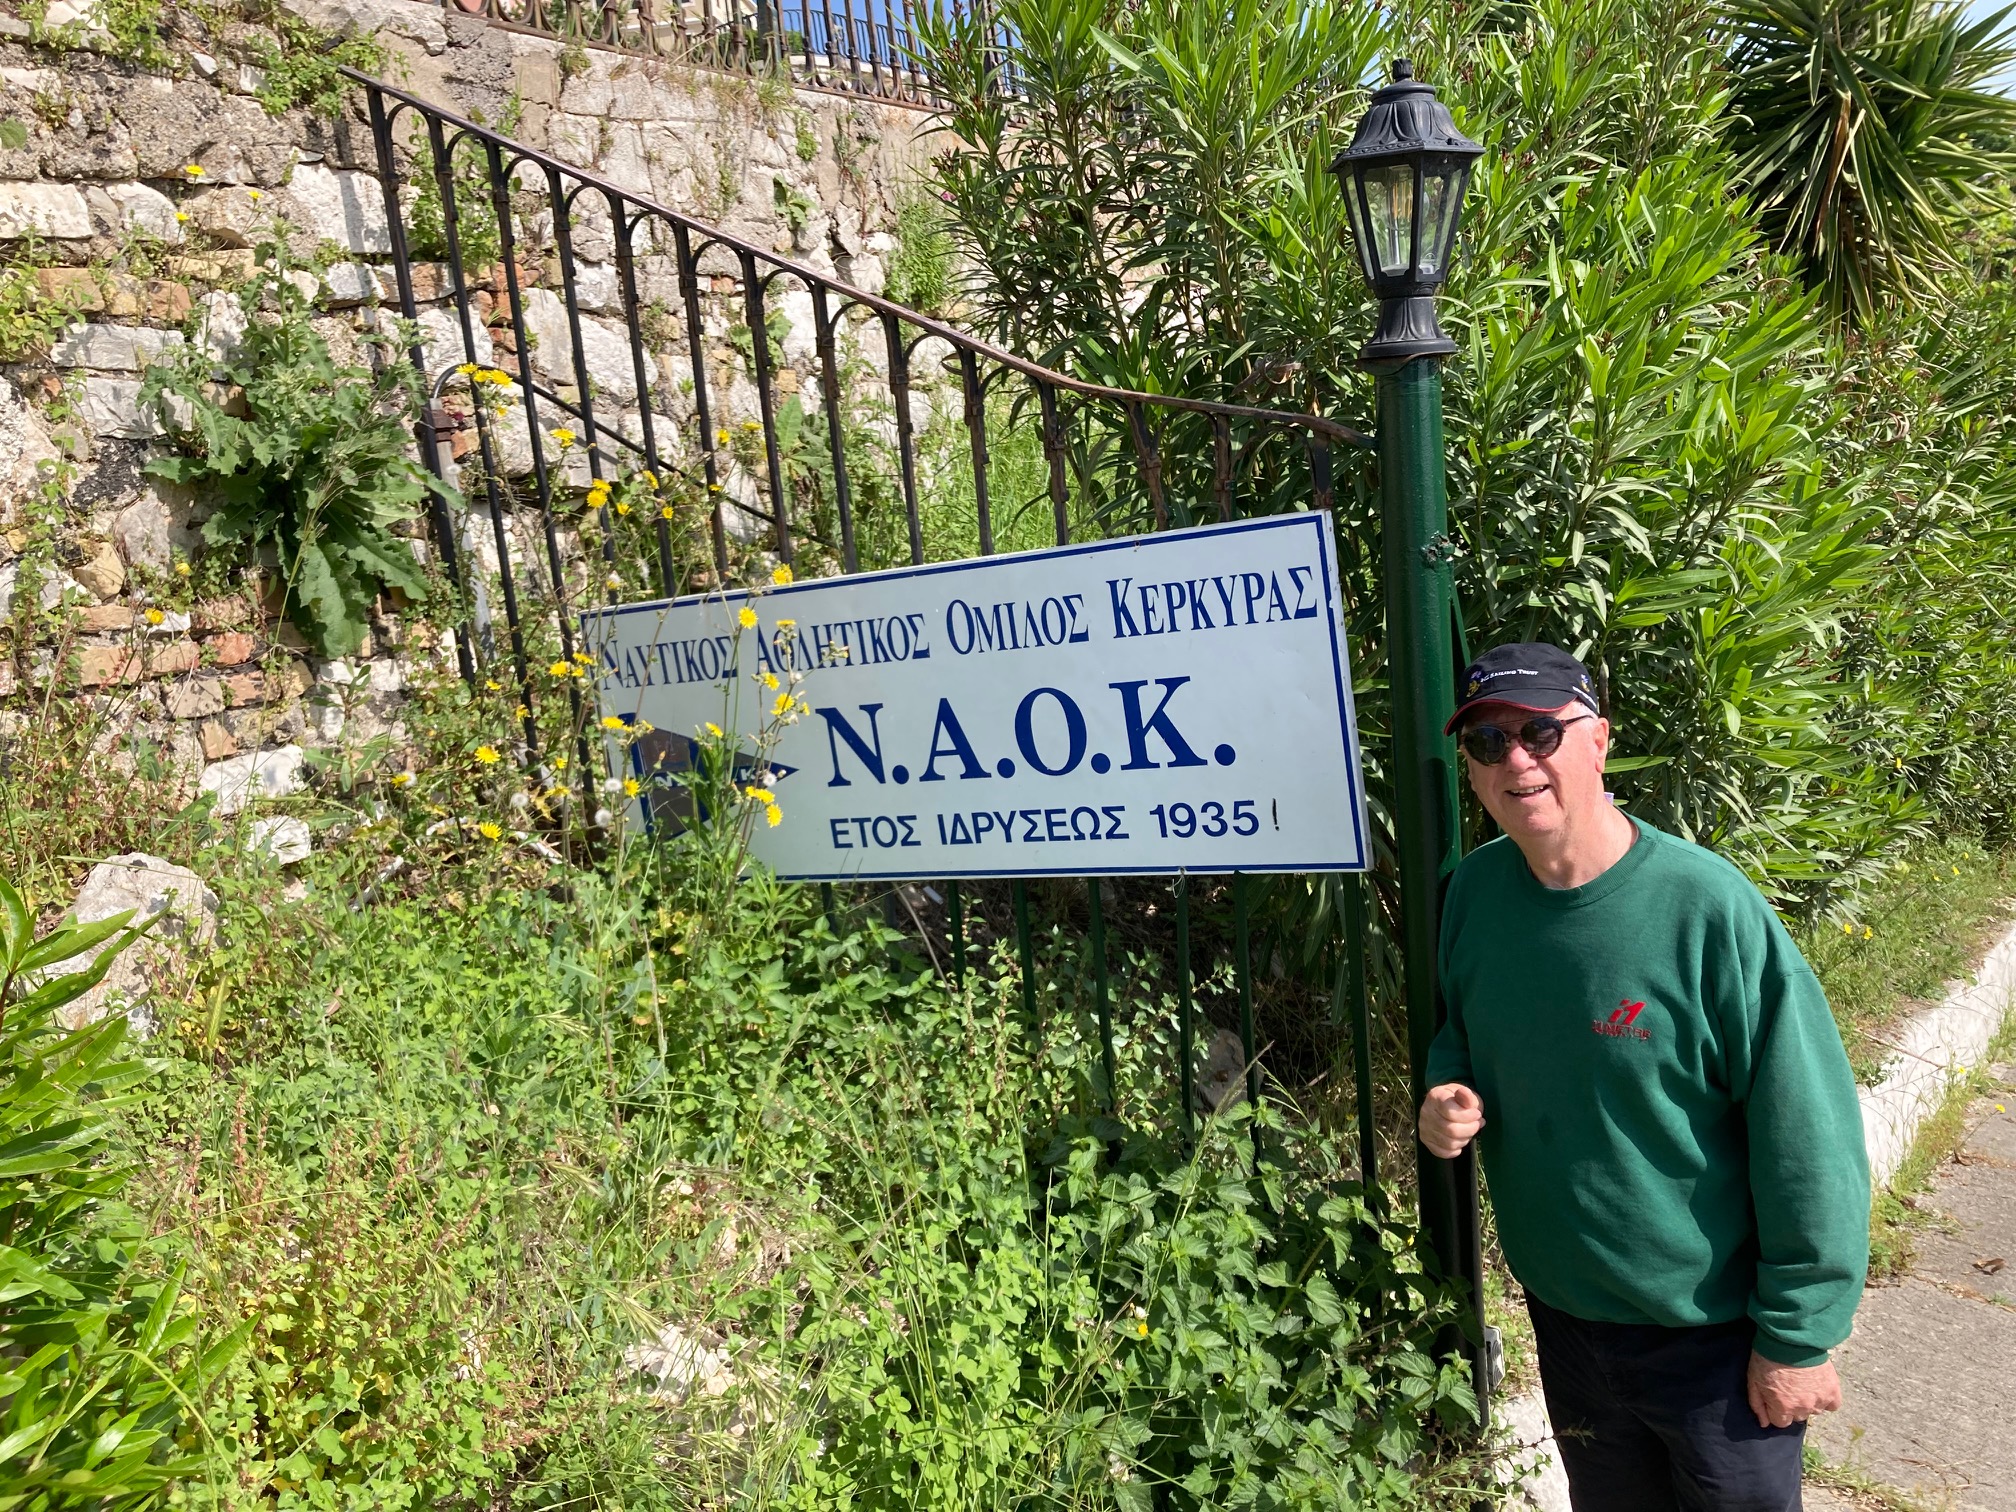 Ron Holland at NAOK, Nautical Club Corfu, in Greece